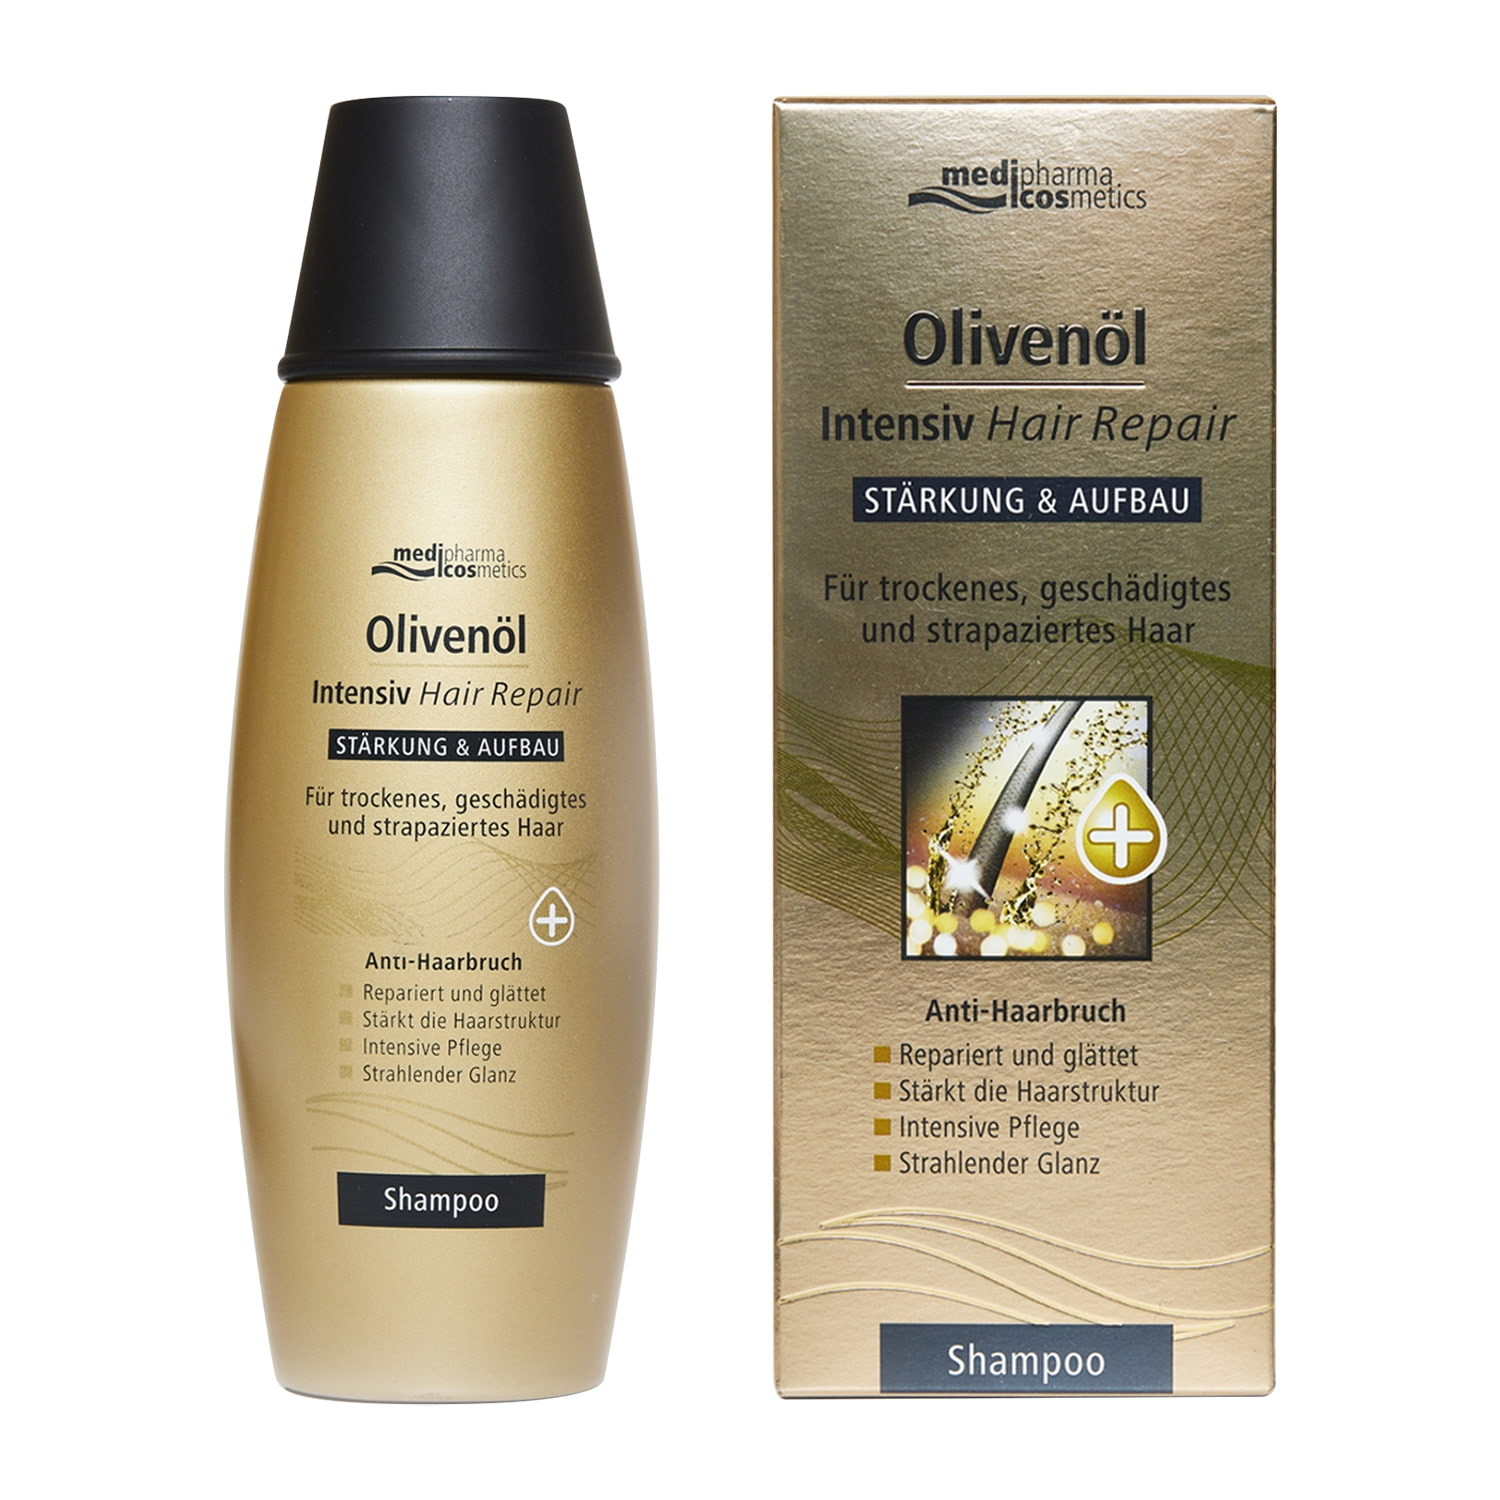 Купить Medipharma Cosmetics Шампунь для восстановления волос Olivenol Intensiv, 200 мл (Medipharma Cosmetics, Olivenol), Германия